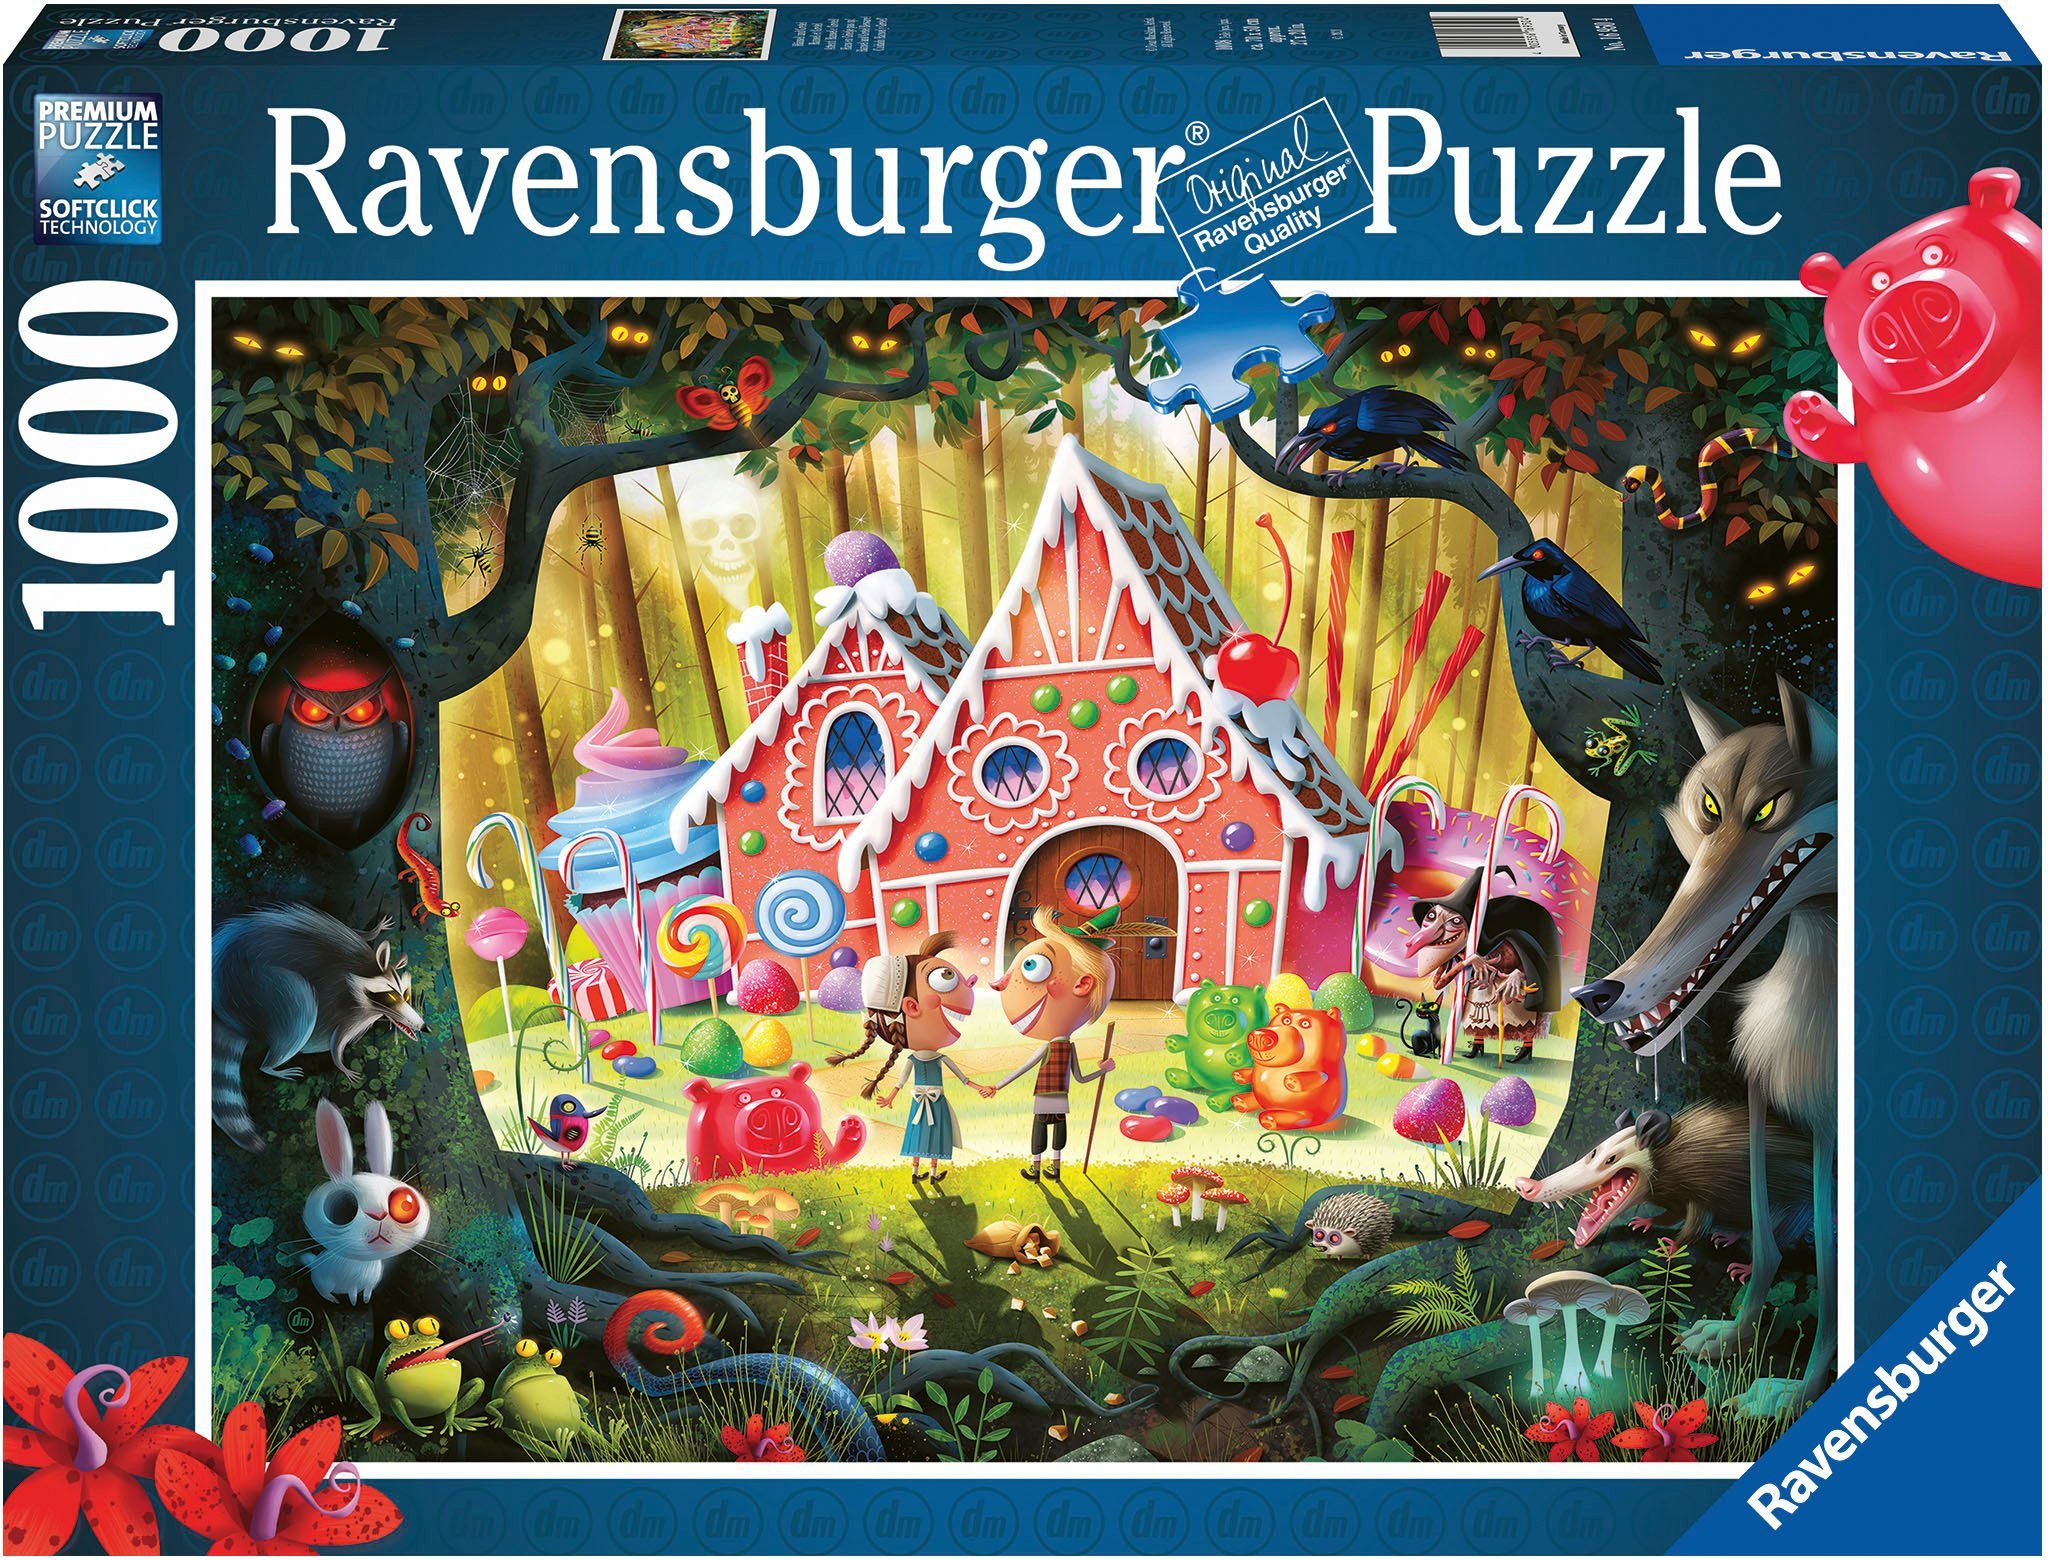 Ravensburger Puzzle Hänsel und Gretel, 1000 Puzzleteile, Made in Germany; FSC®- schützt Wald - weltweit